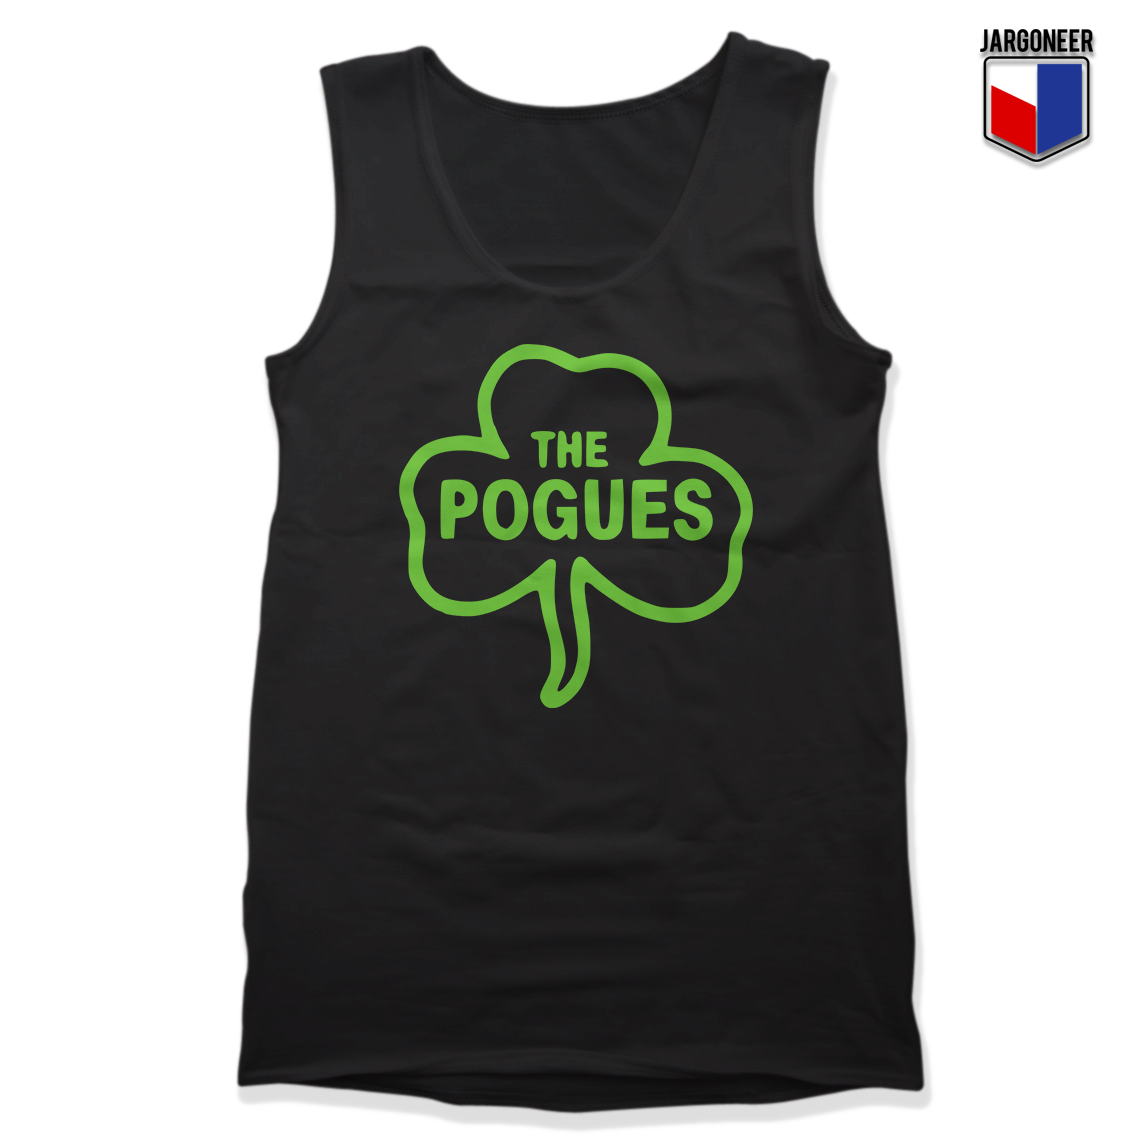 The Pogues Leafe Black Tank - Shop Unique Graphic Cool Shirt Designs